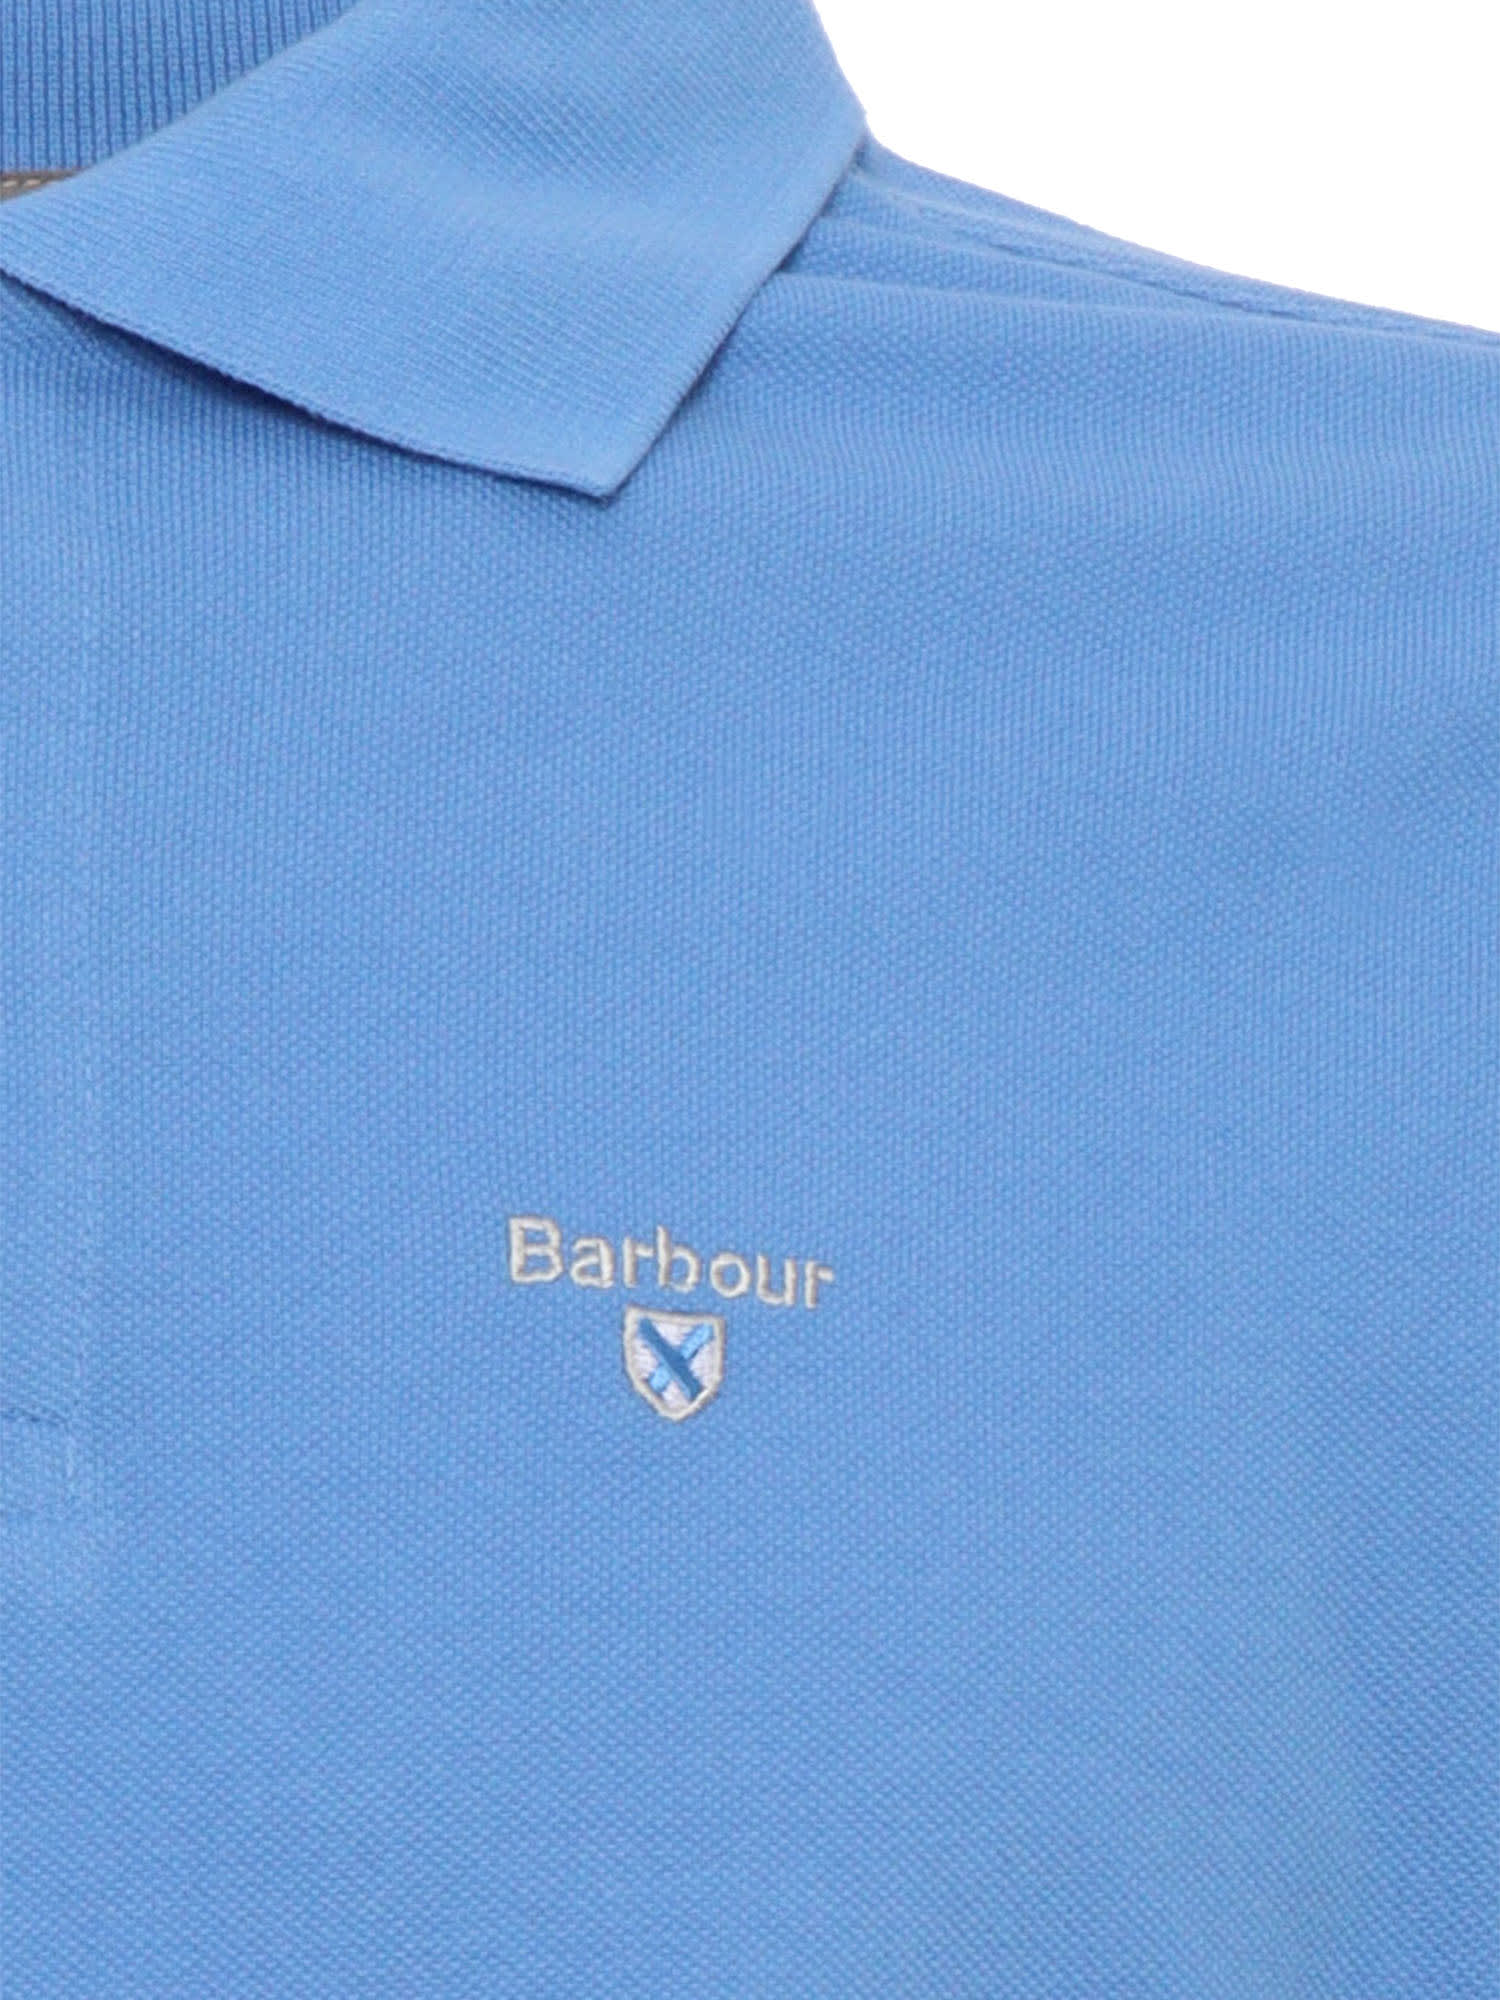 Shop Barbour Light Blue Polo